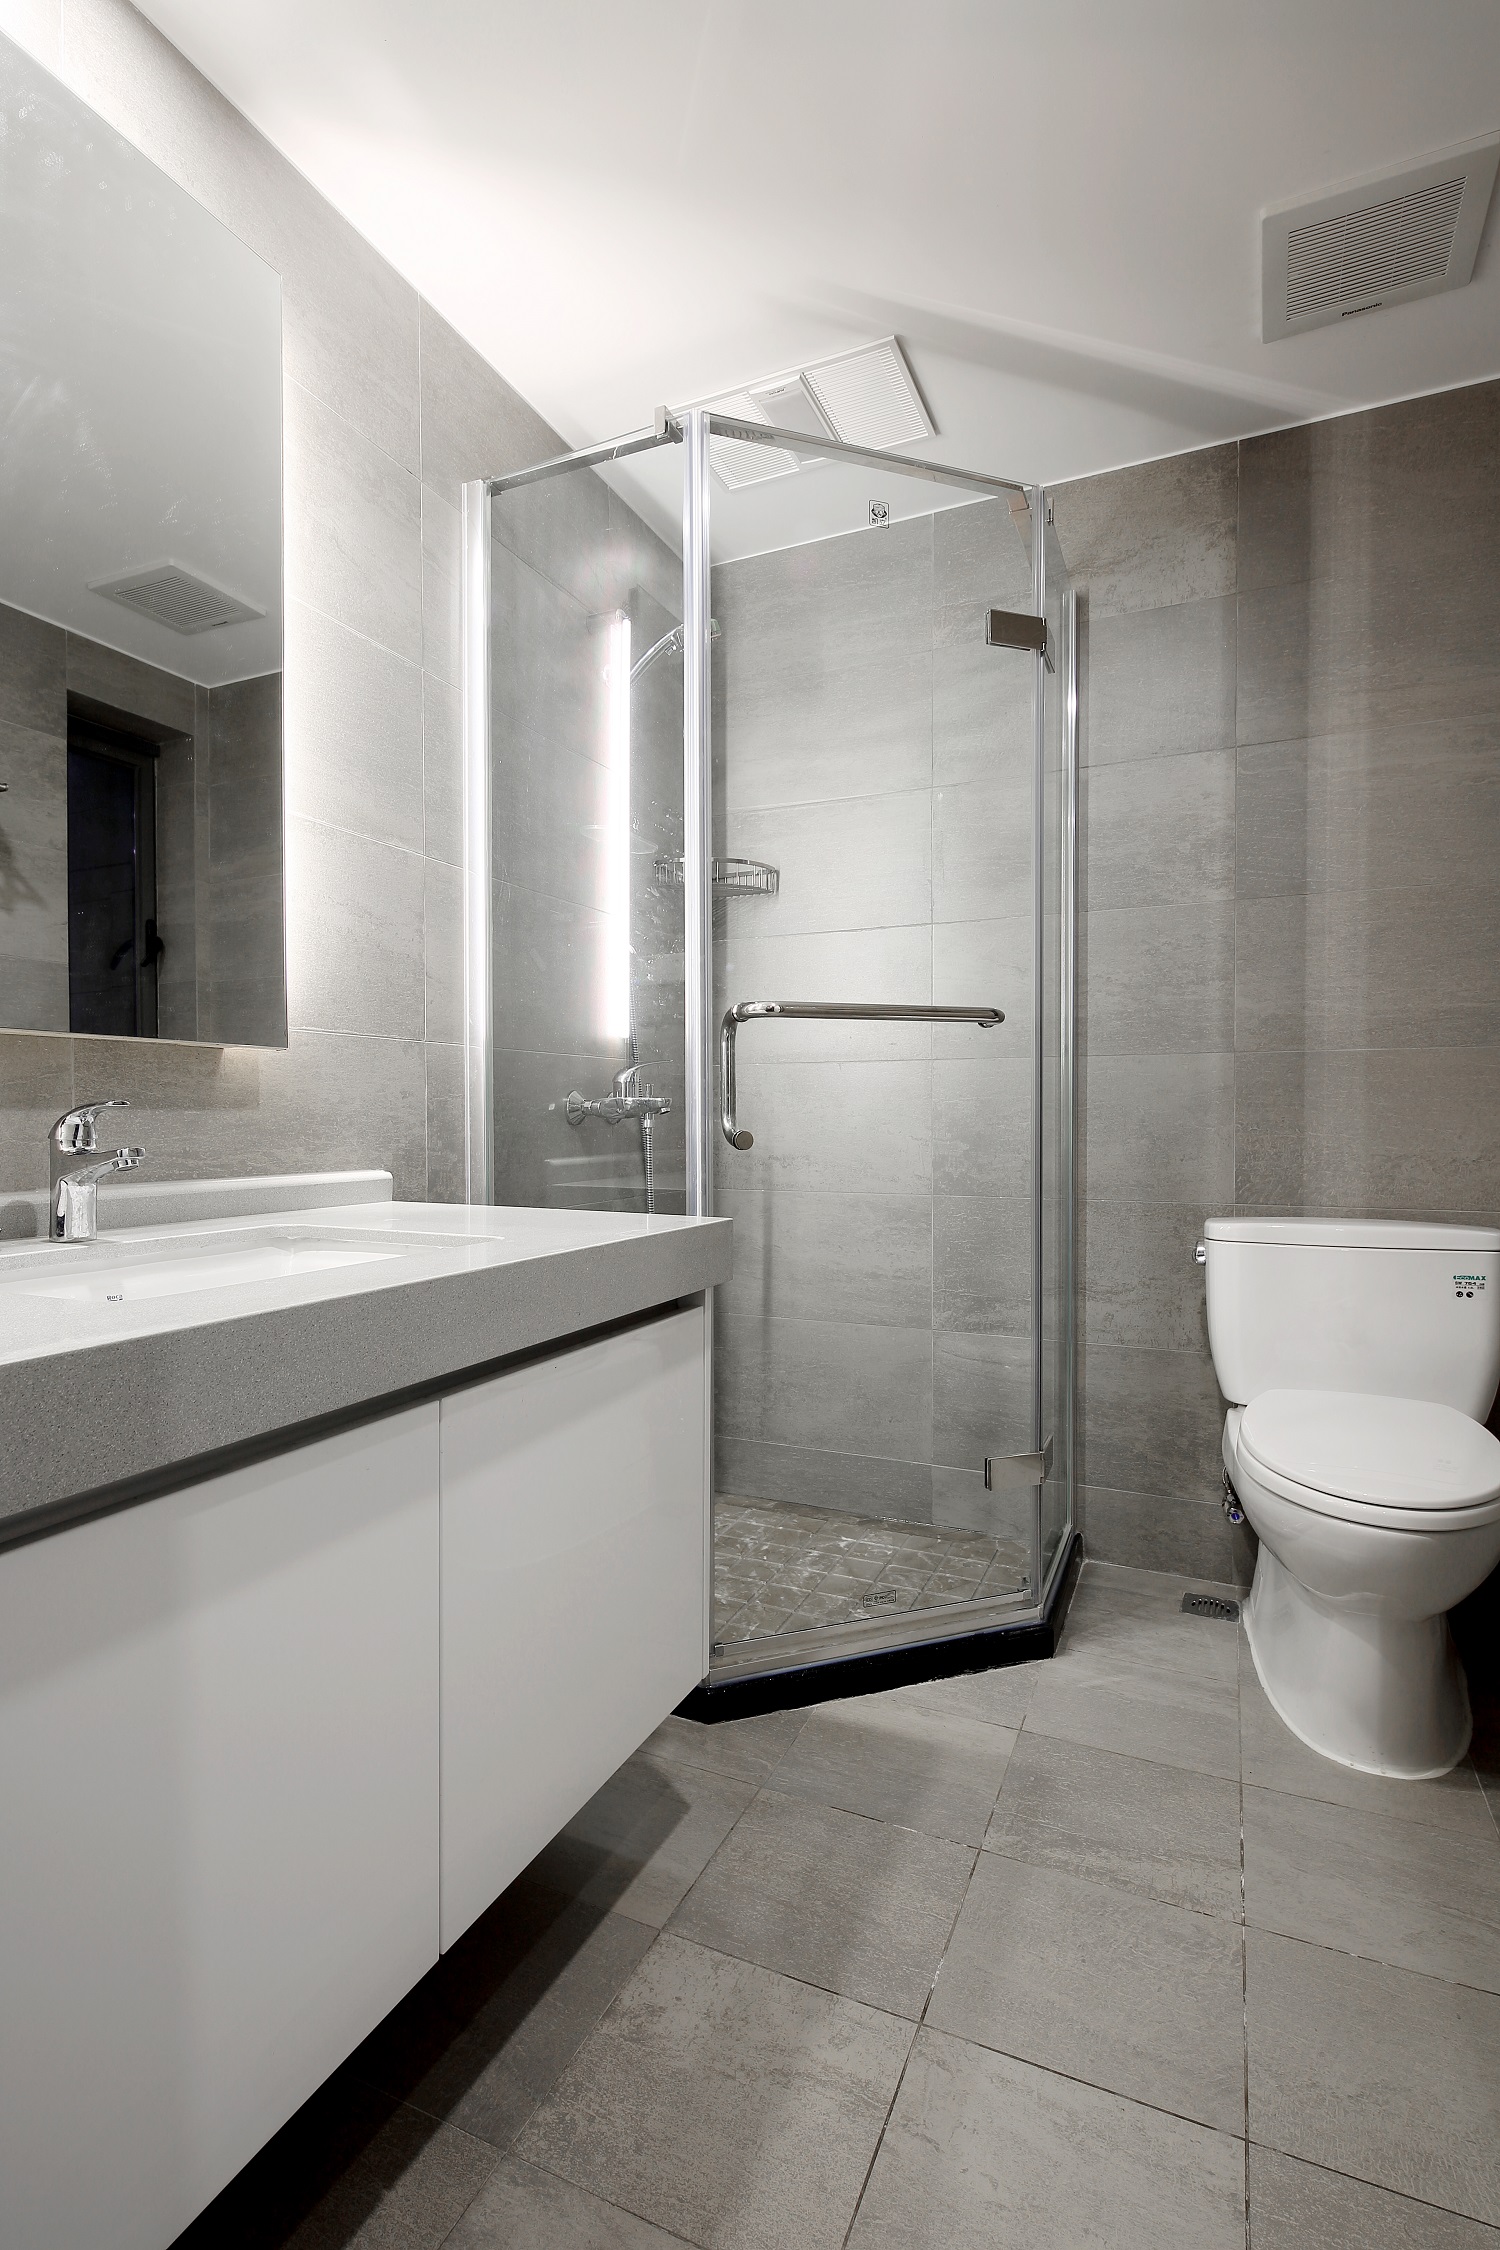 卫浴空间整体气质满分，干湿分离后空间显得更有序，日常也更加方便打扫。